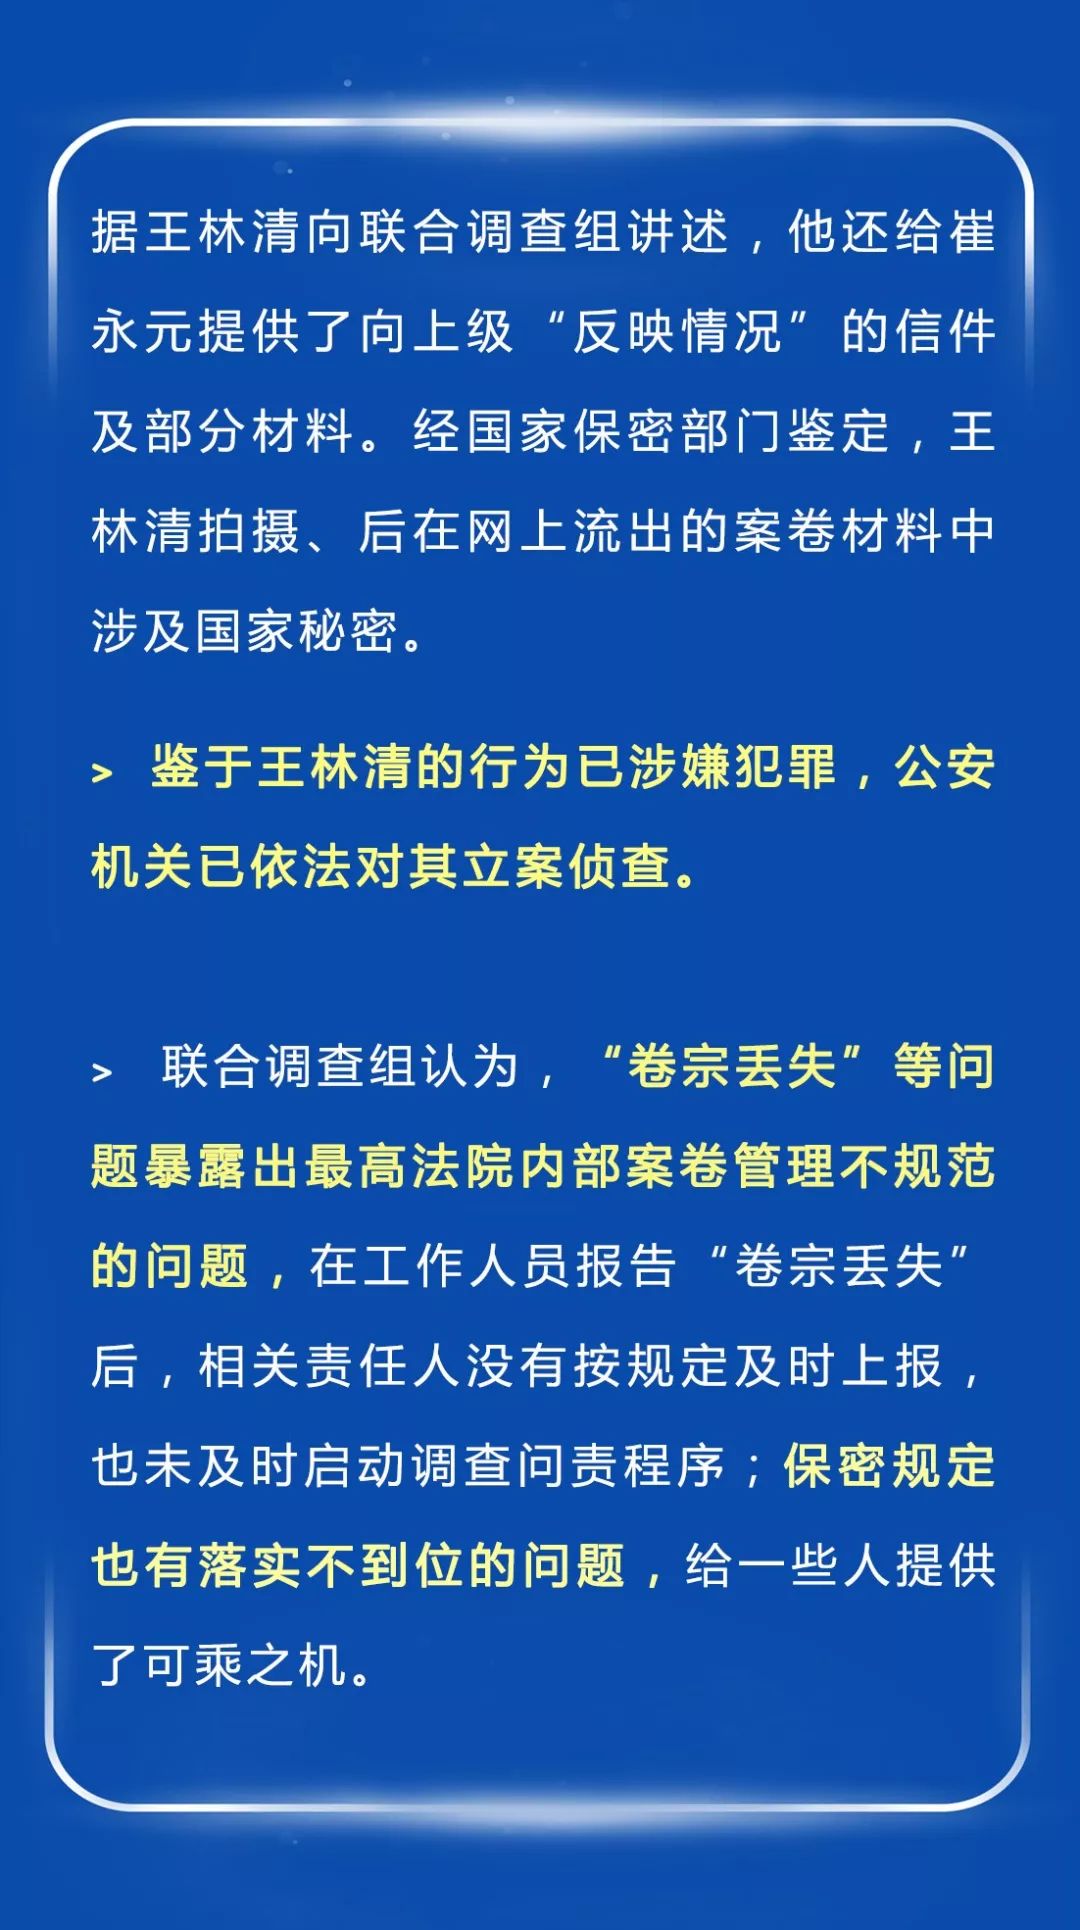 王林清在凯奇莱案当事人赵发琦于2011年上诉到最高法院后,担任该案